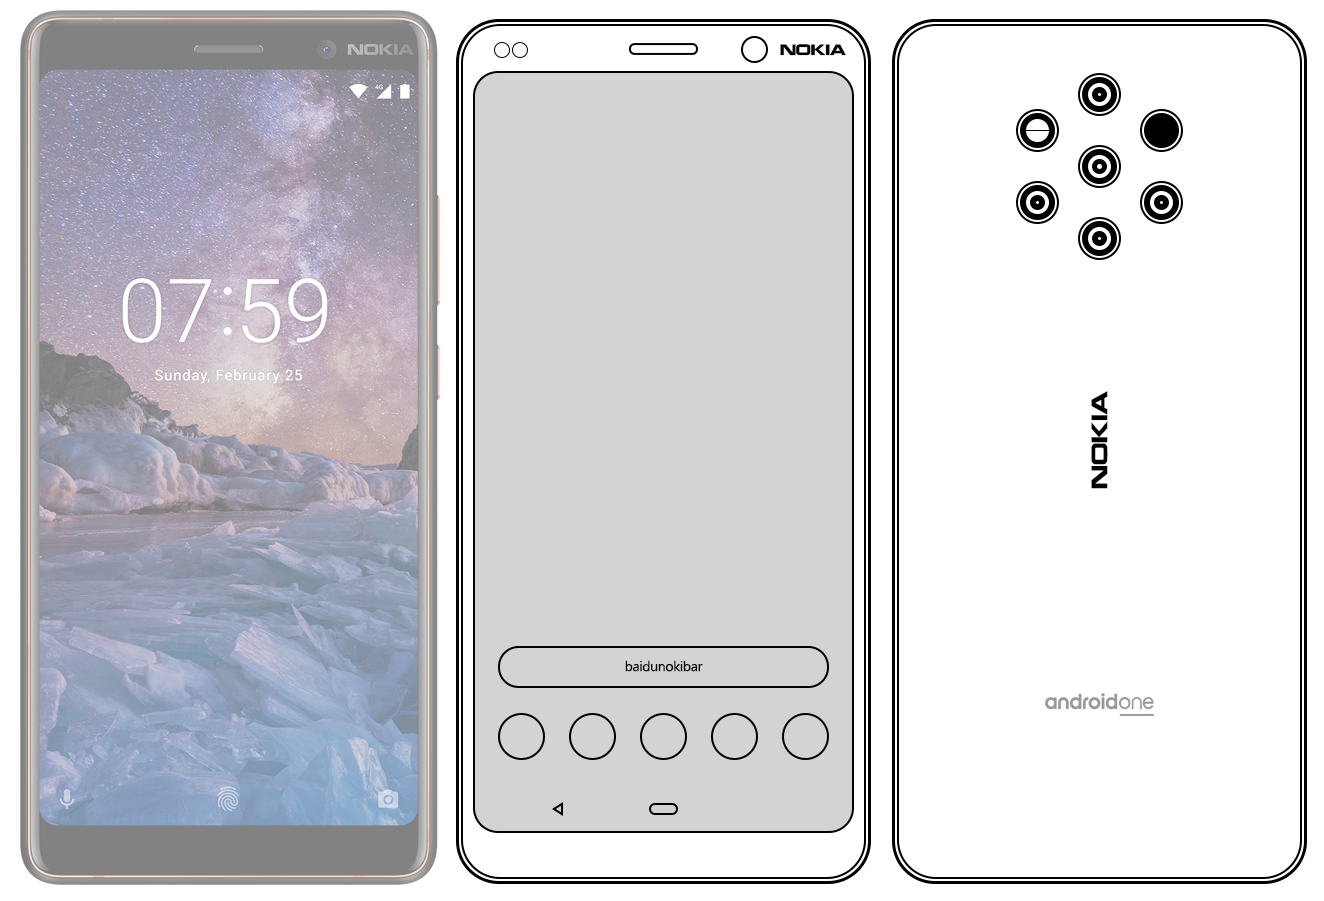 Nokia 9 design sketch